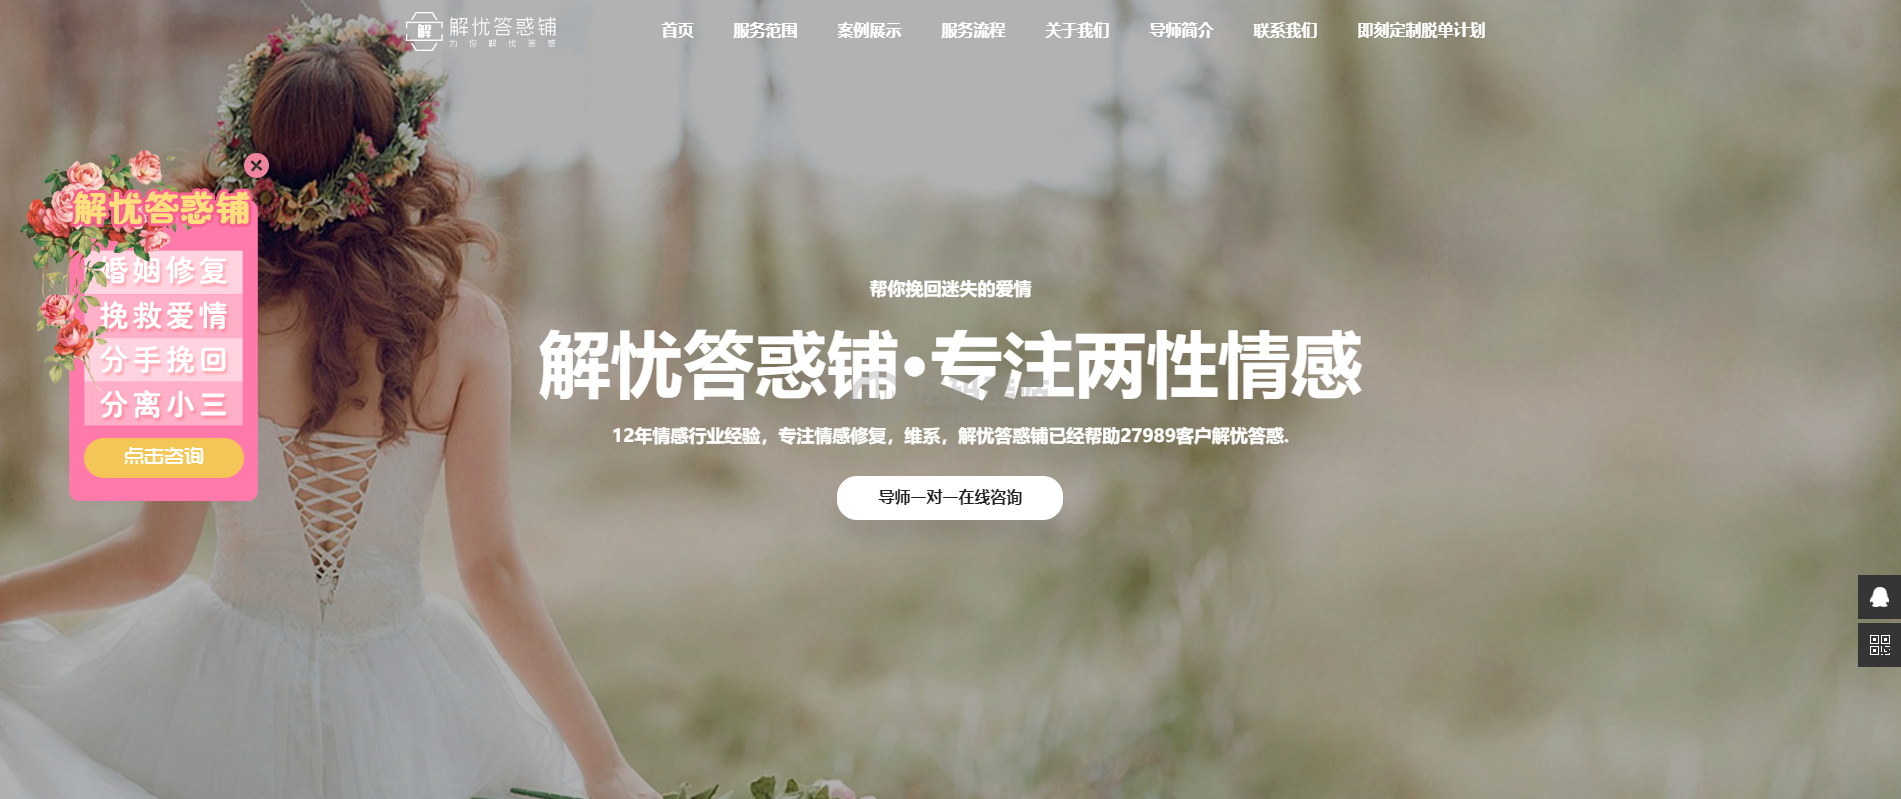 小清新企业官网展示模板婚恋宣传网站静态展示模板html_亿码酷站,官网模板插图